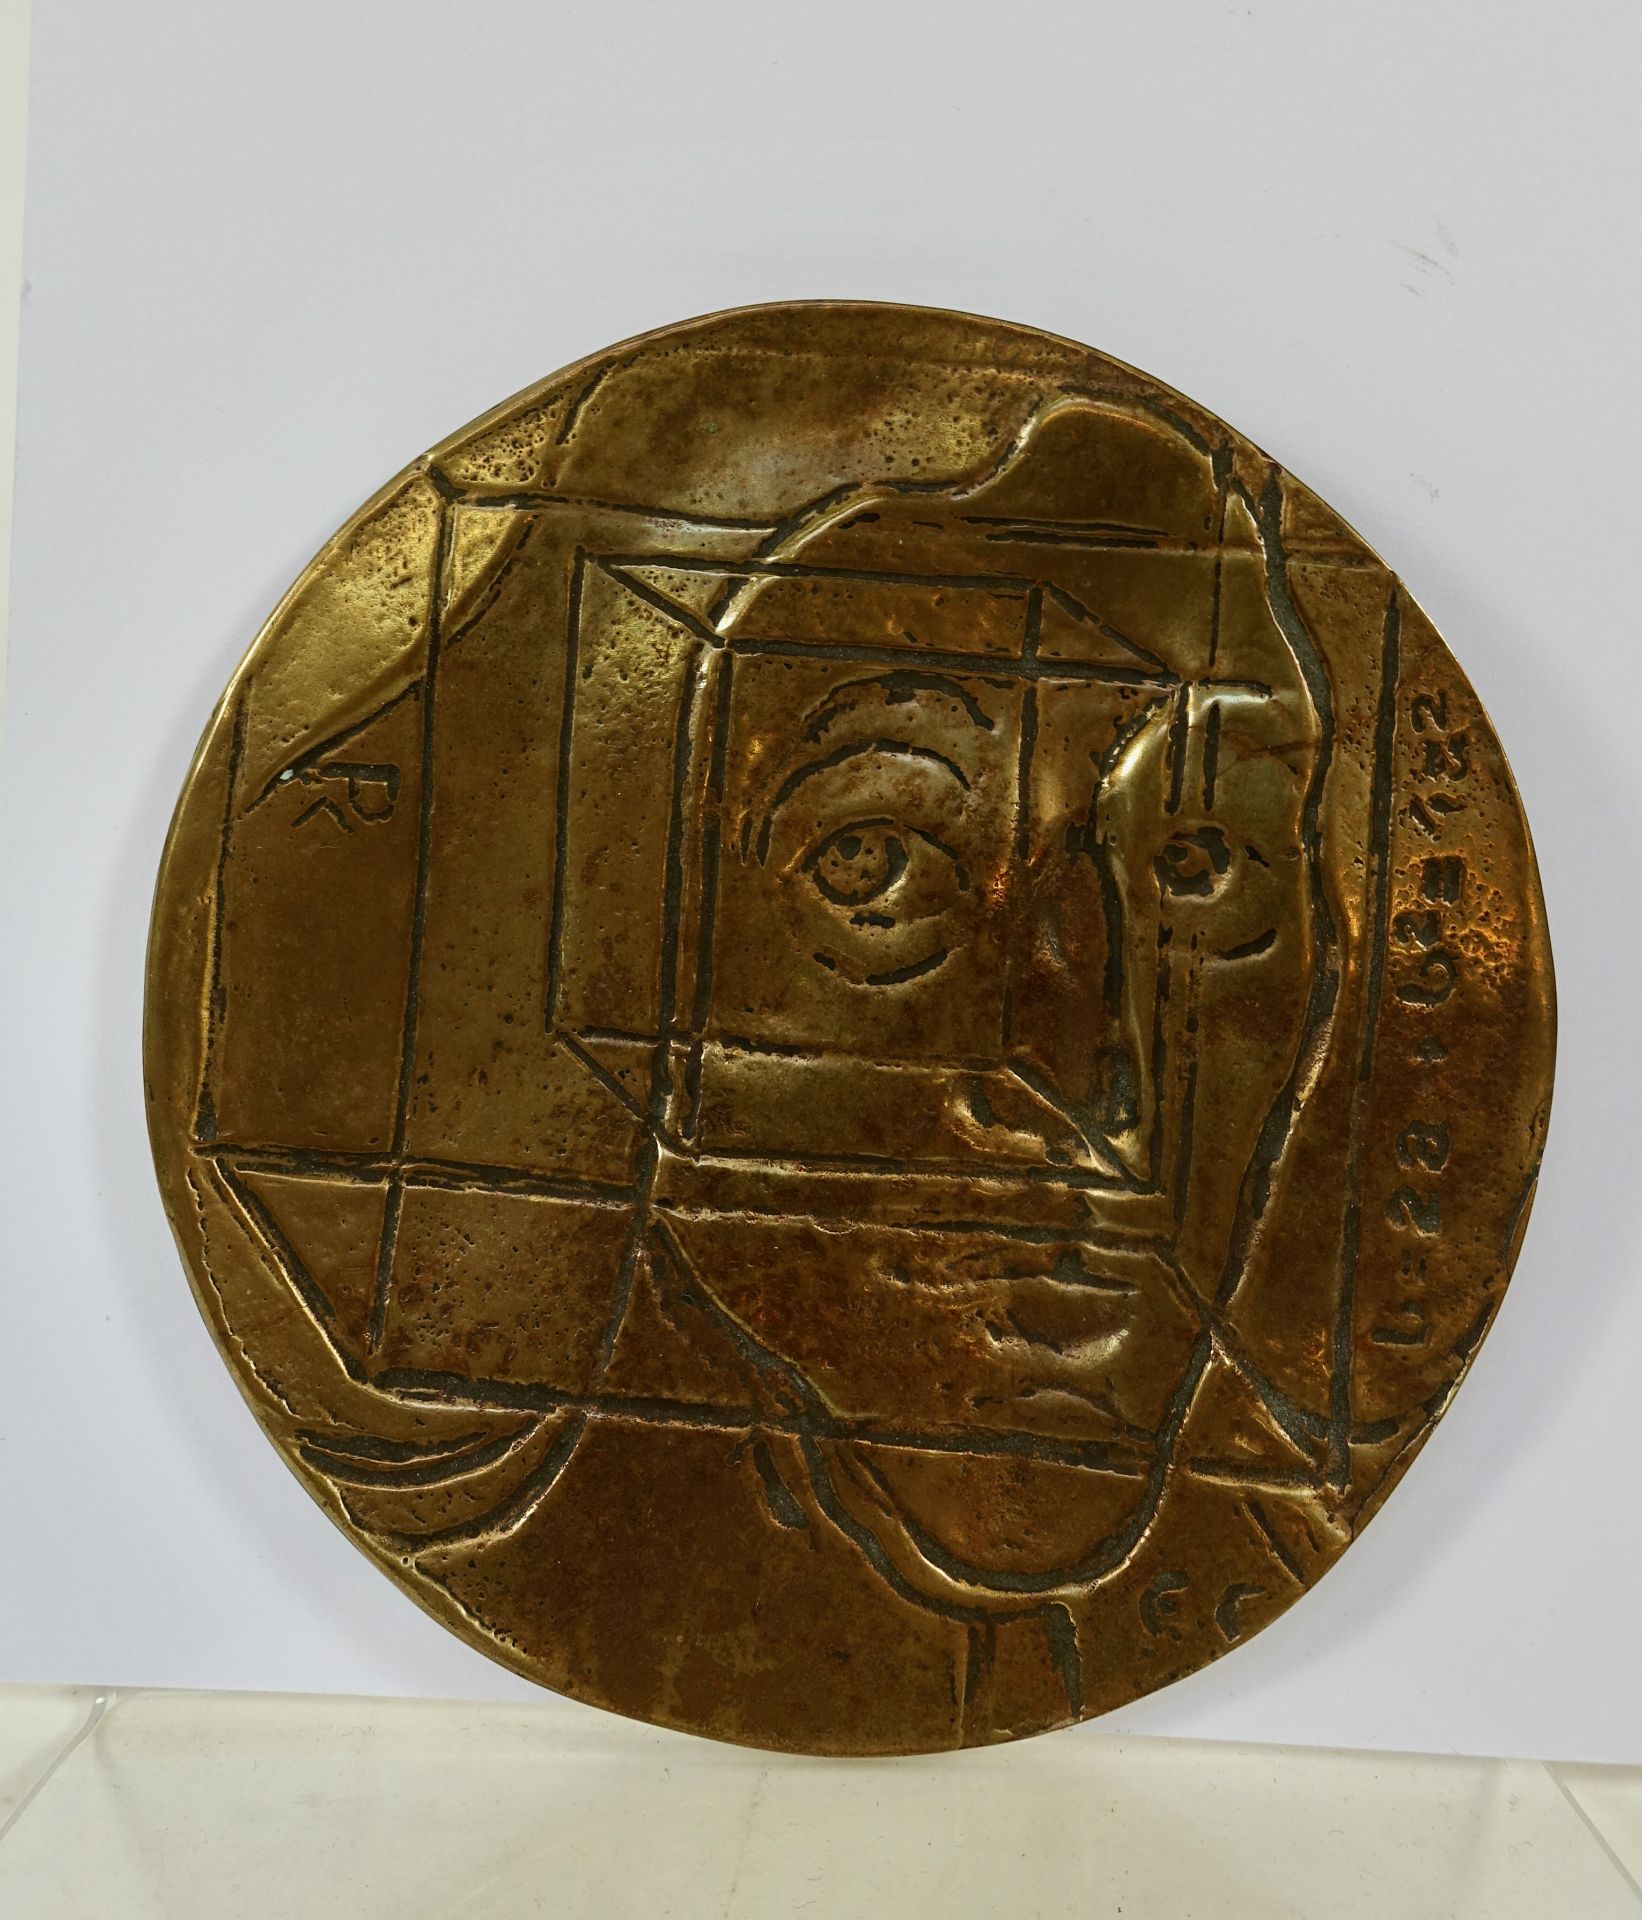 VERENIGING VOOR PENNINGKUNST -- "SPINOZA". (Zandvoort, Argentor, 2001). Bronze cast medal by Eric - Image 2 of 2